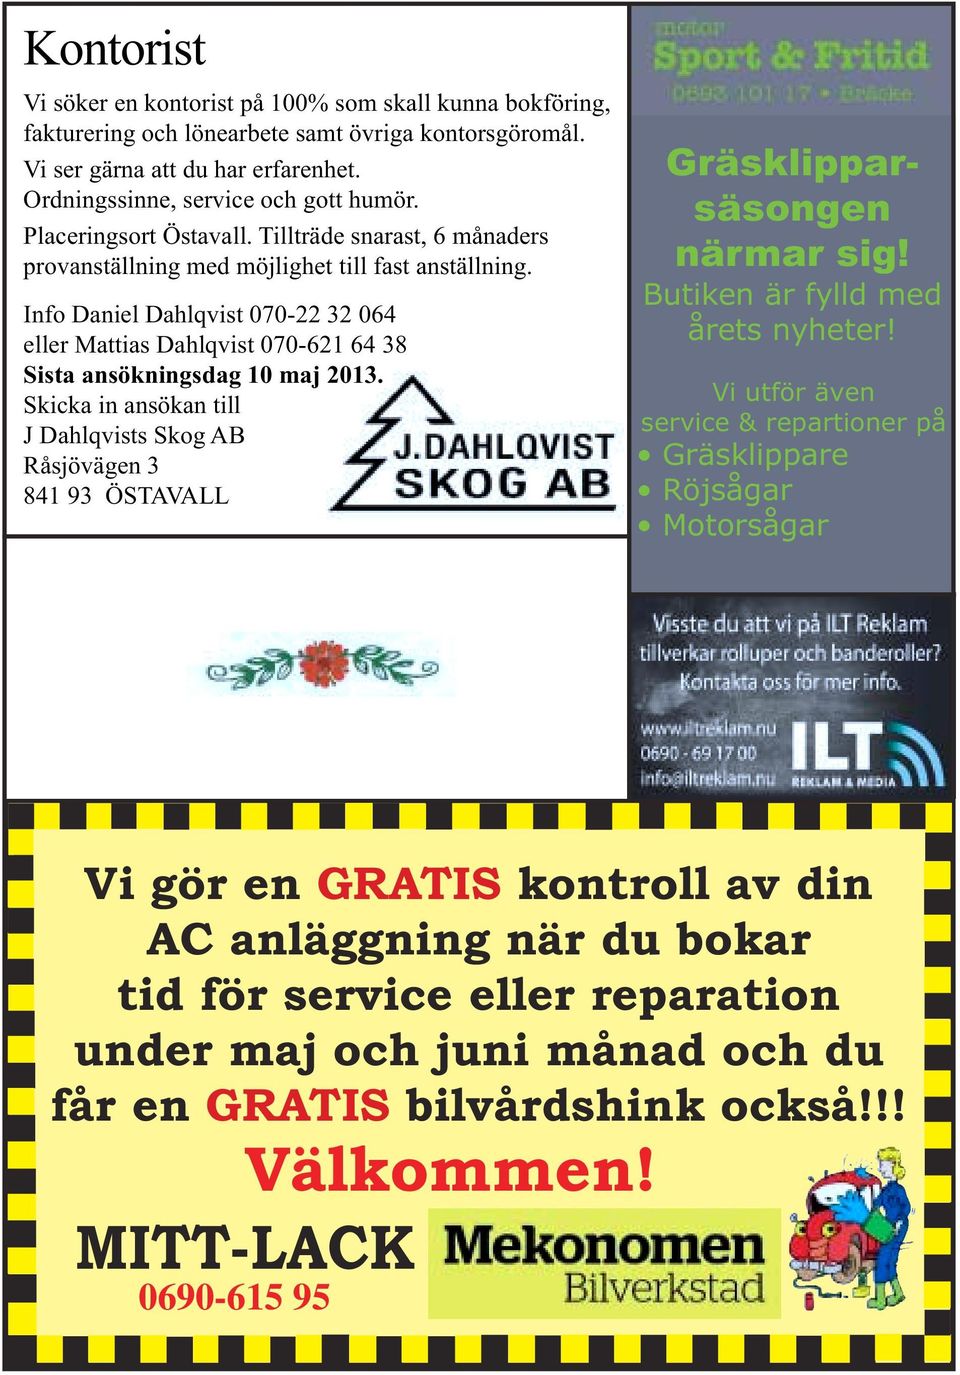 Info Daniel Dahlqvist 070-22 32 064 eller Mattias Dahlqvist 070-621 64 38 Sista ansökningsdag 10 maj 2013.